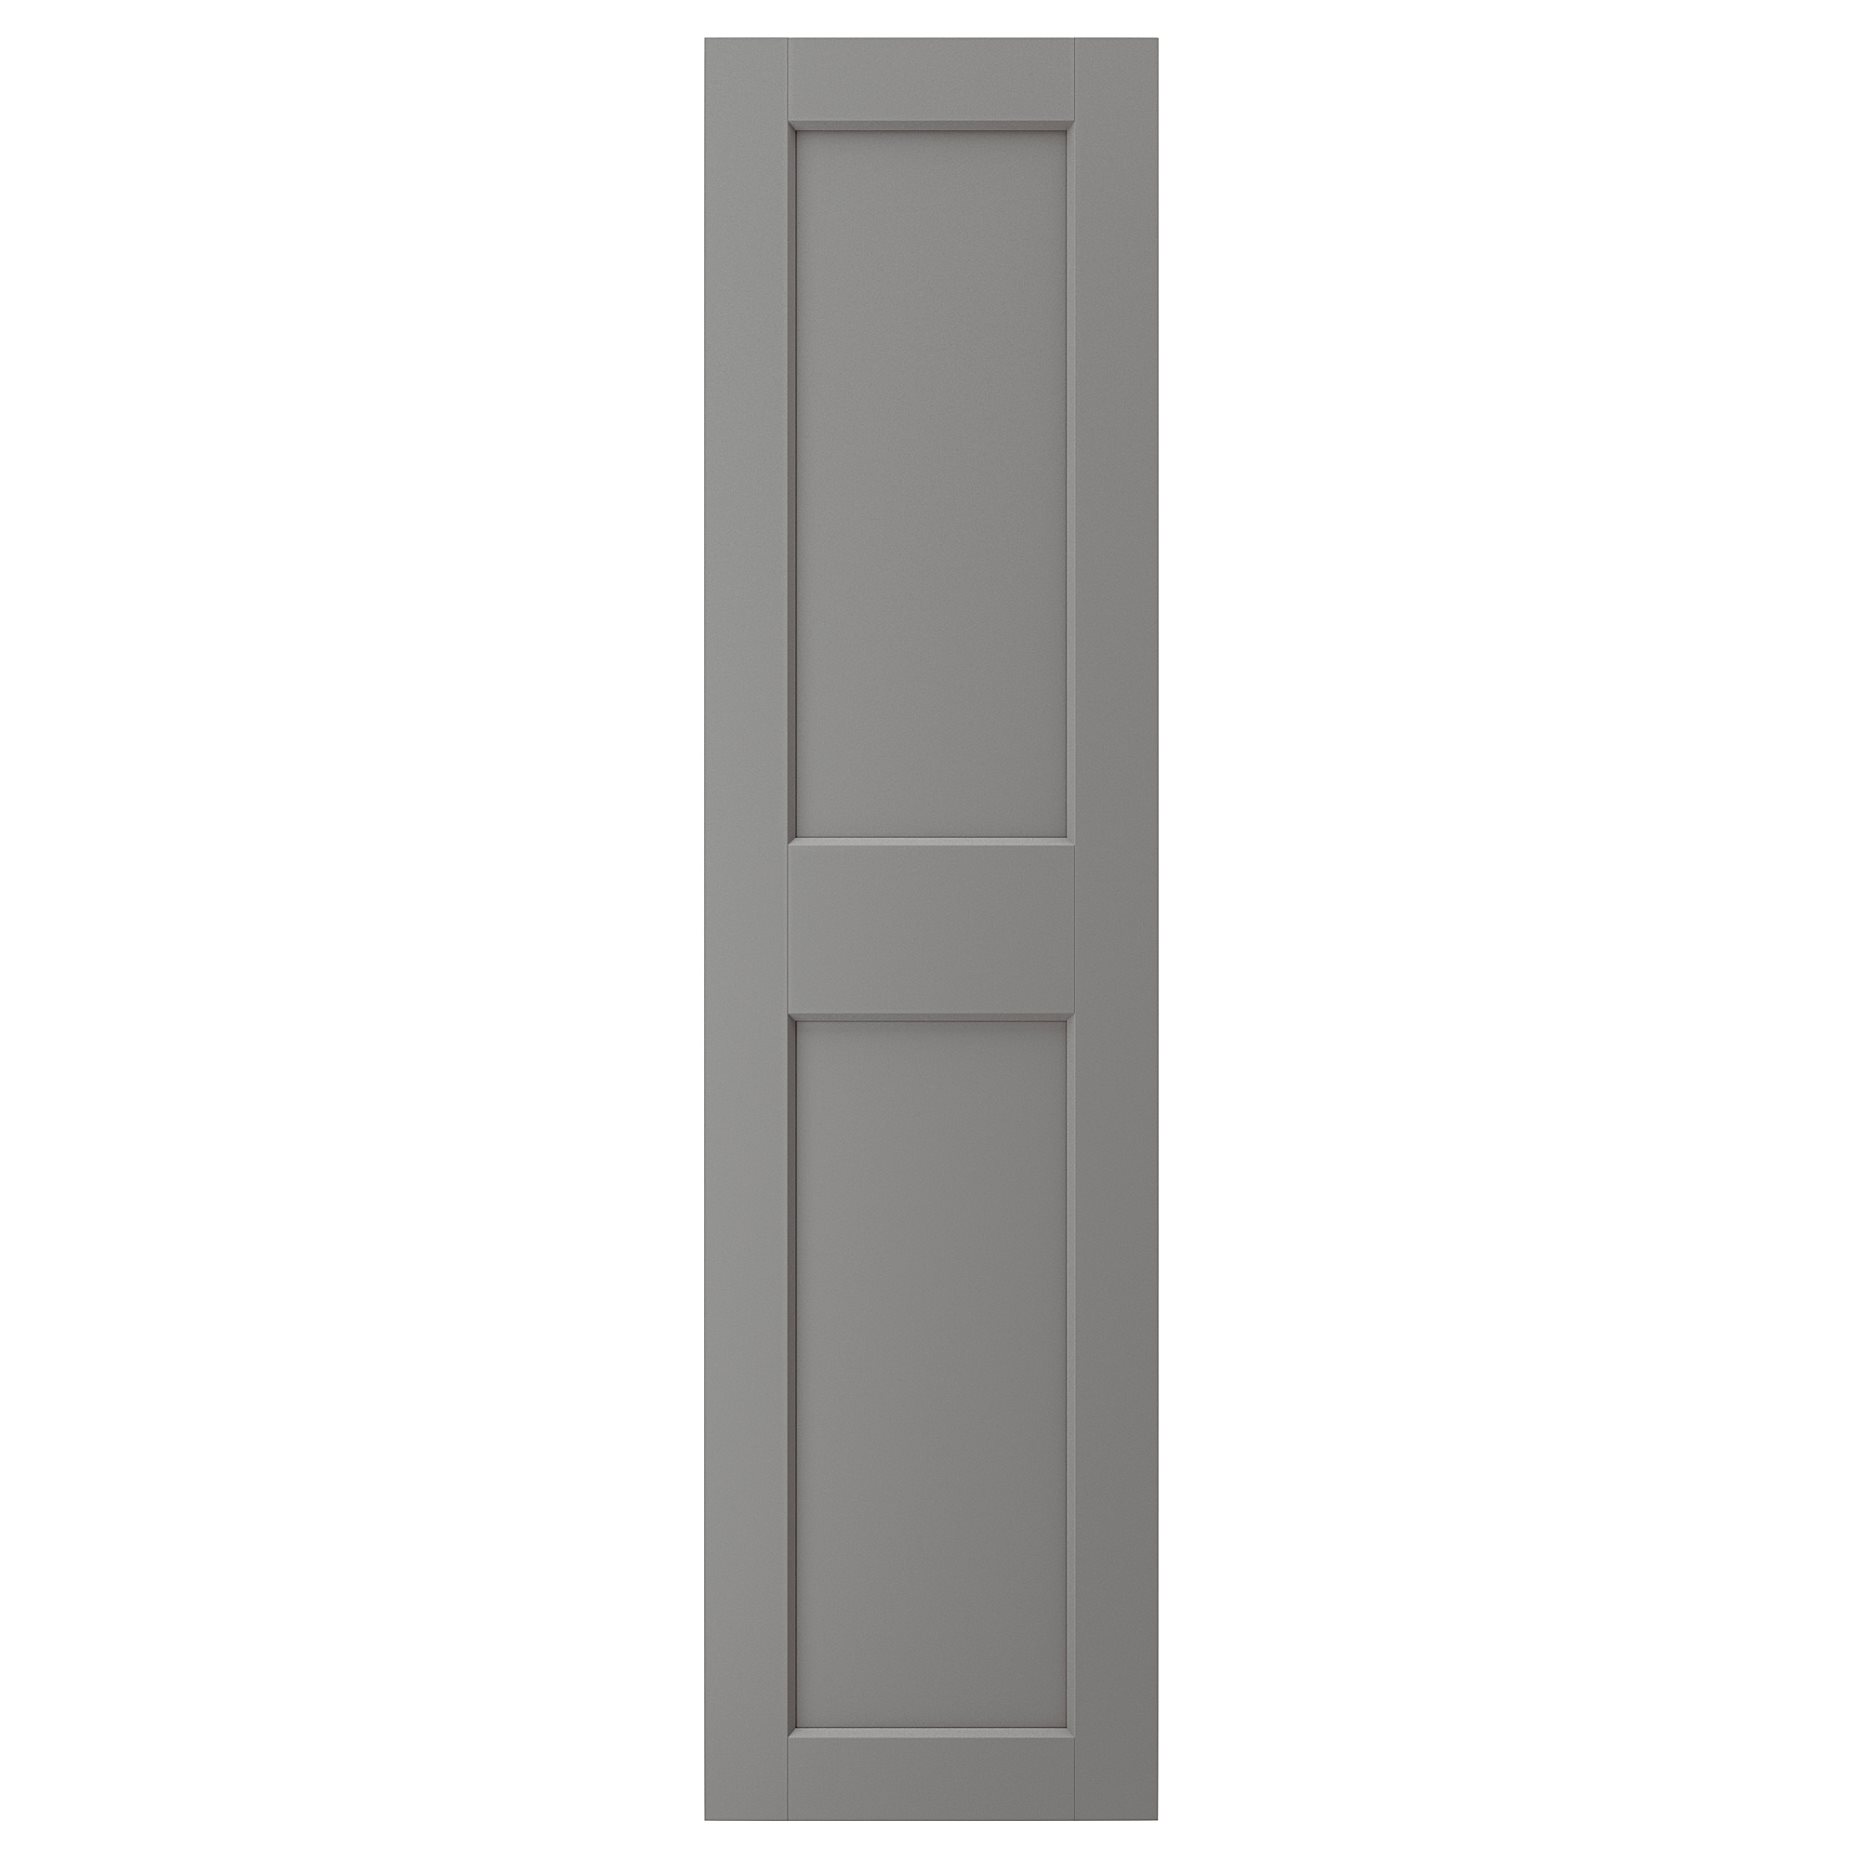 GRIMO, door, 50x195 cm, 204.351.86